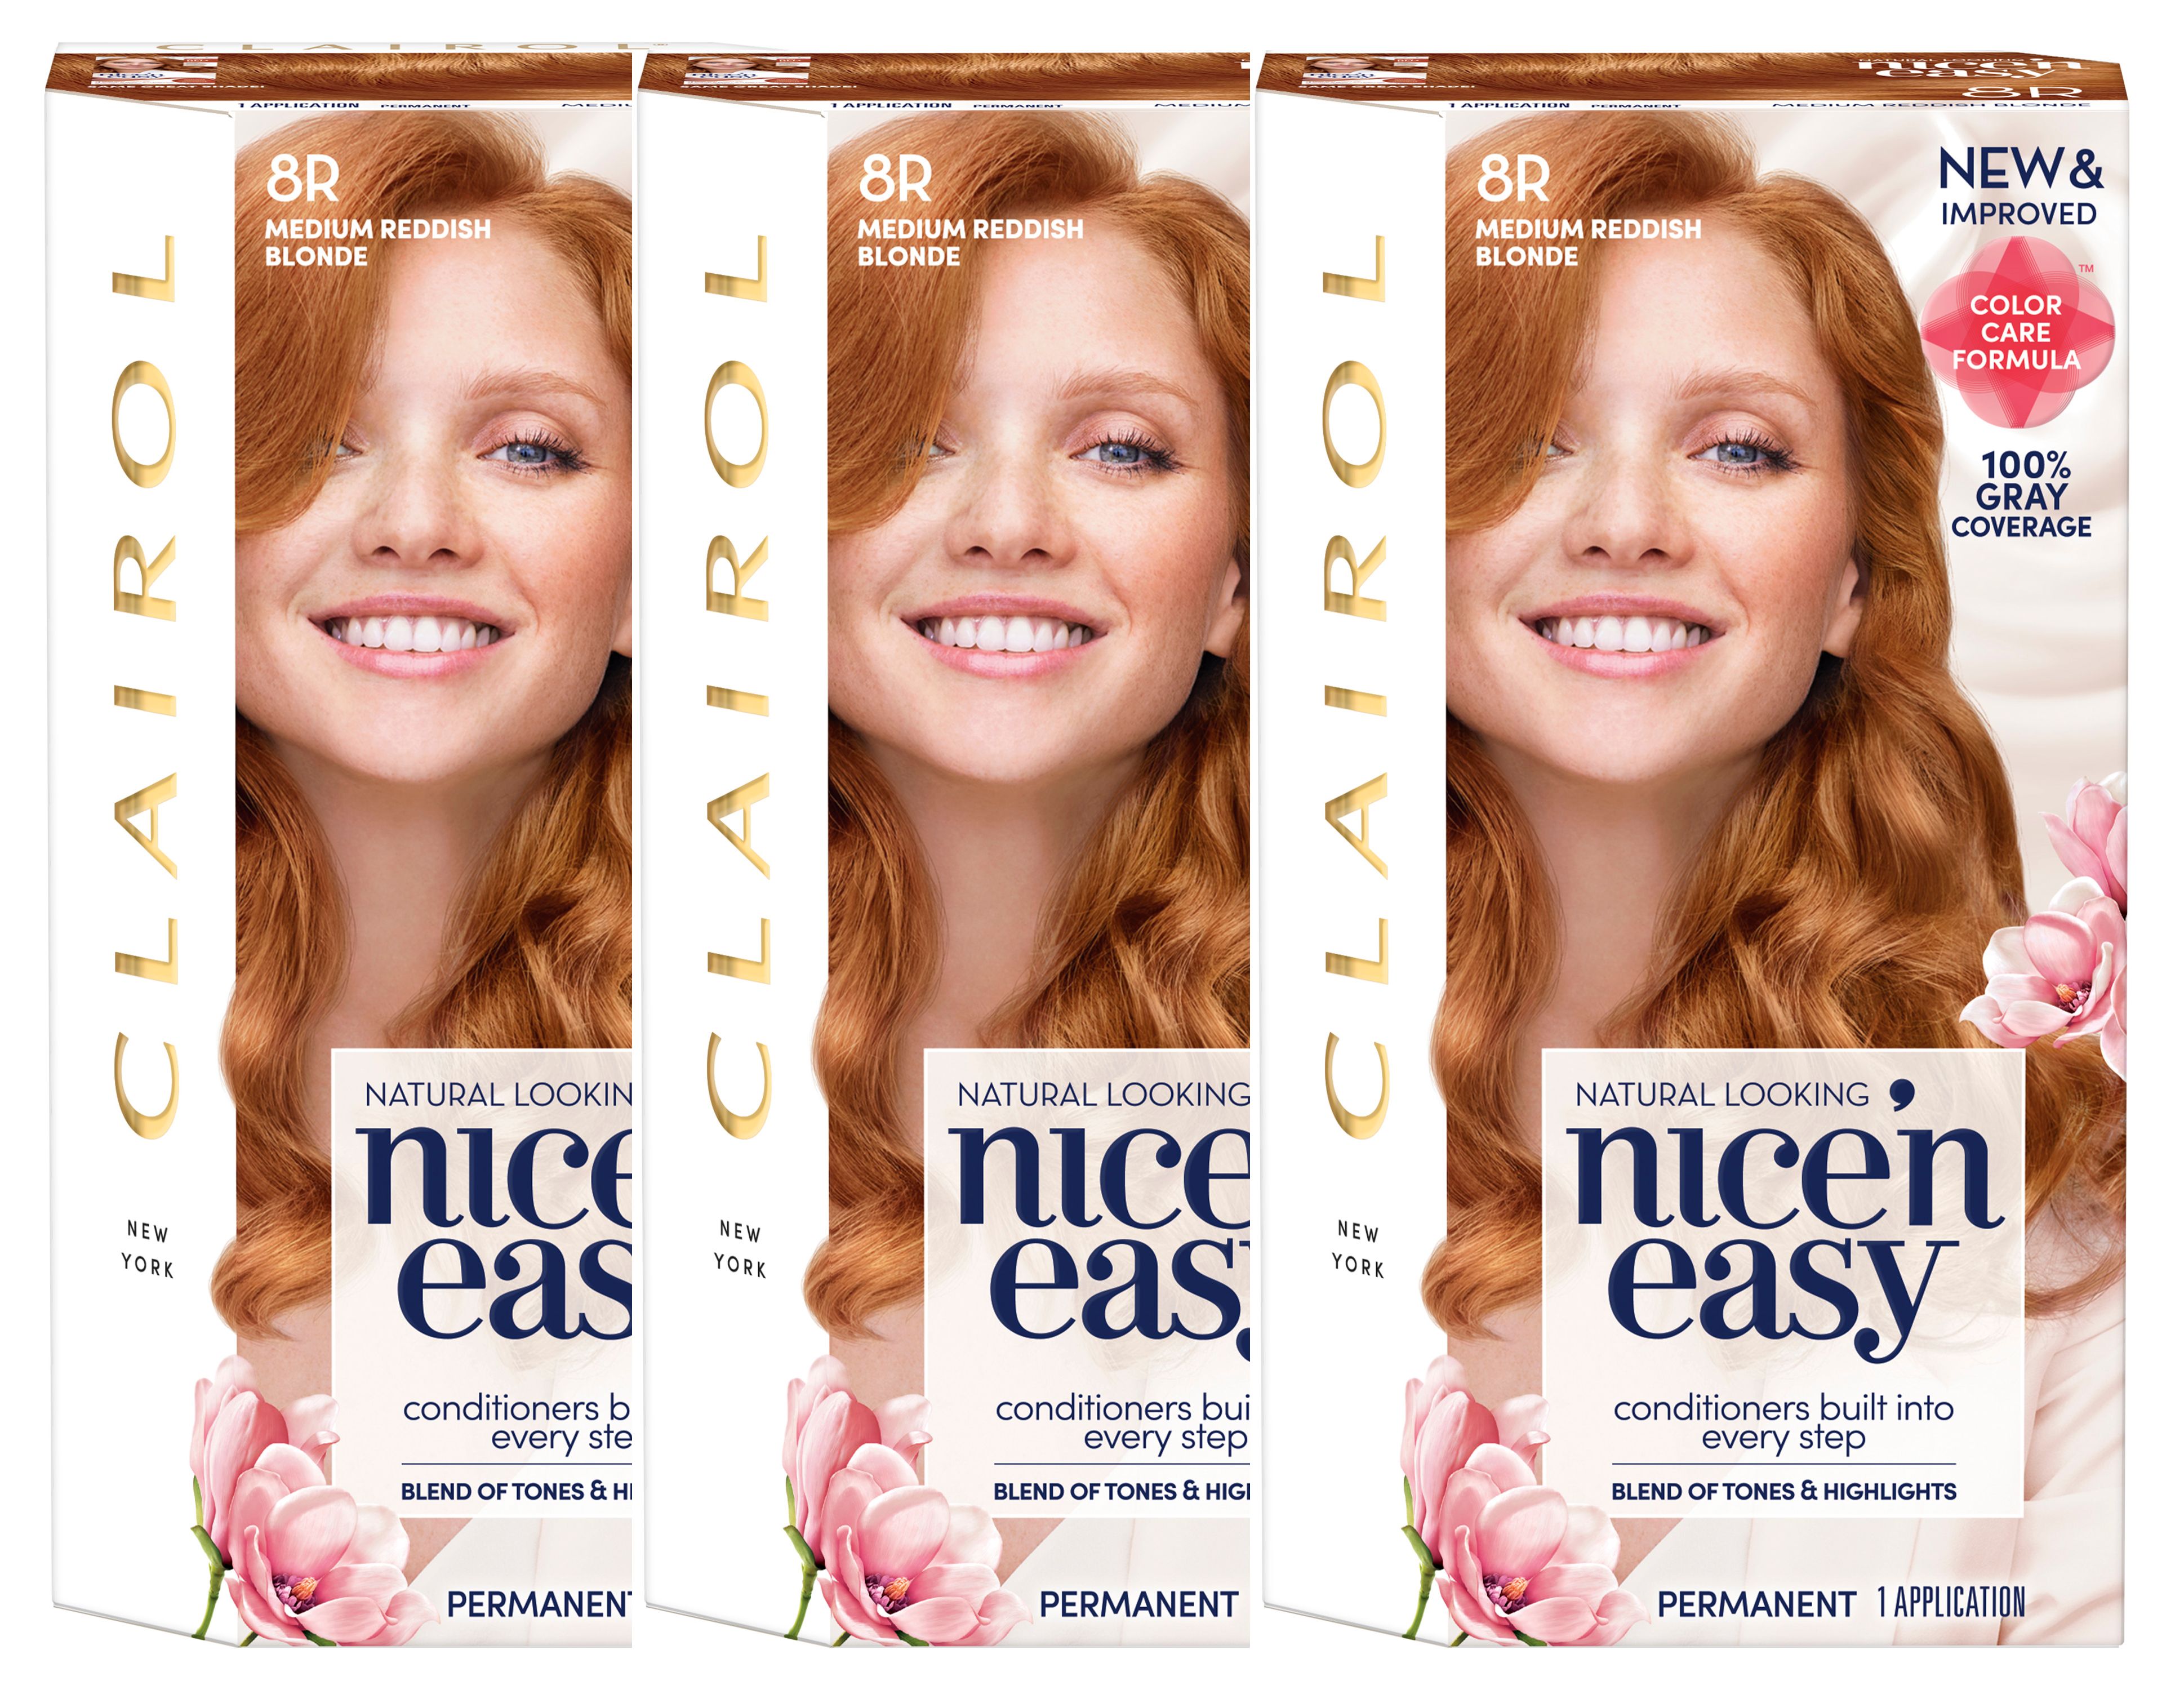 Clairol Nice'n Easy Permanent Hair Color, 8R Medium Reddish Blonde, Pack of 1 - wide 5